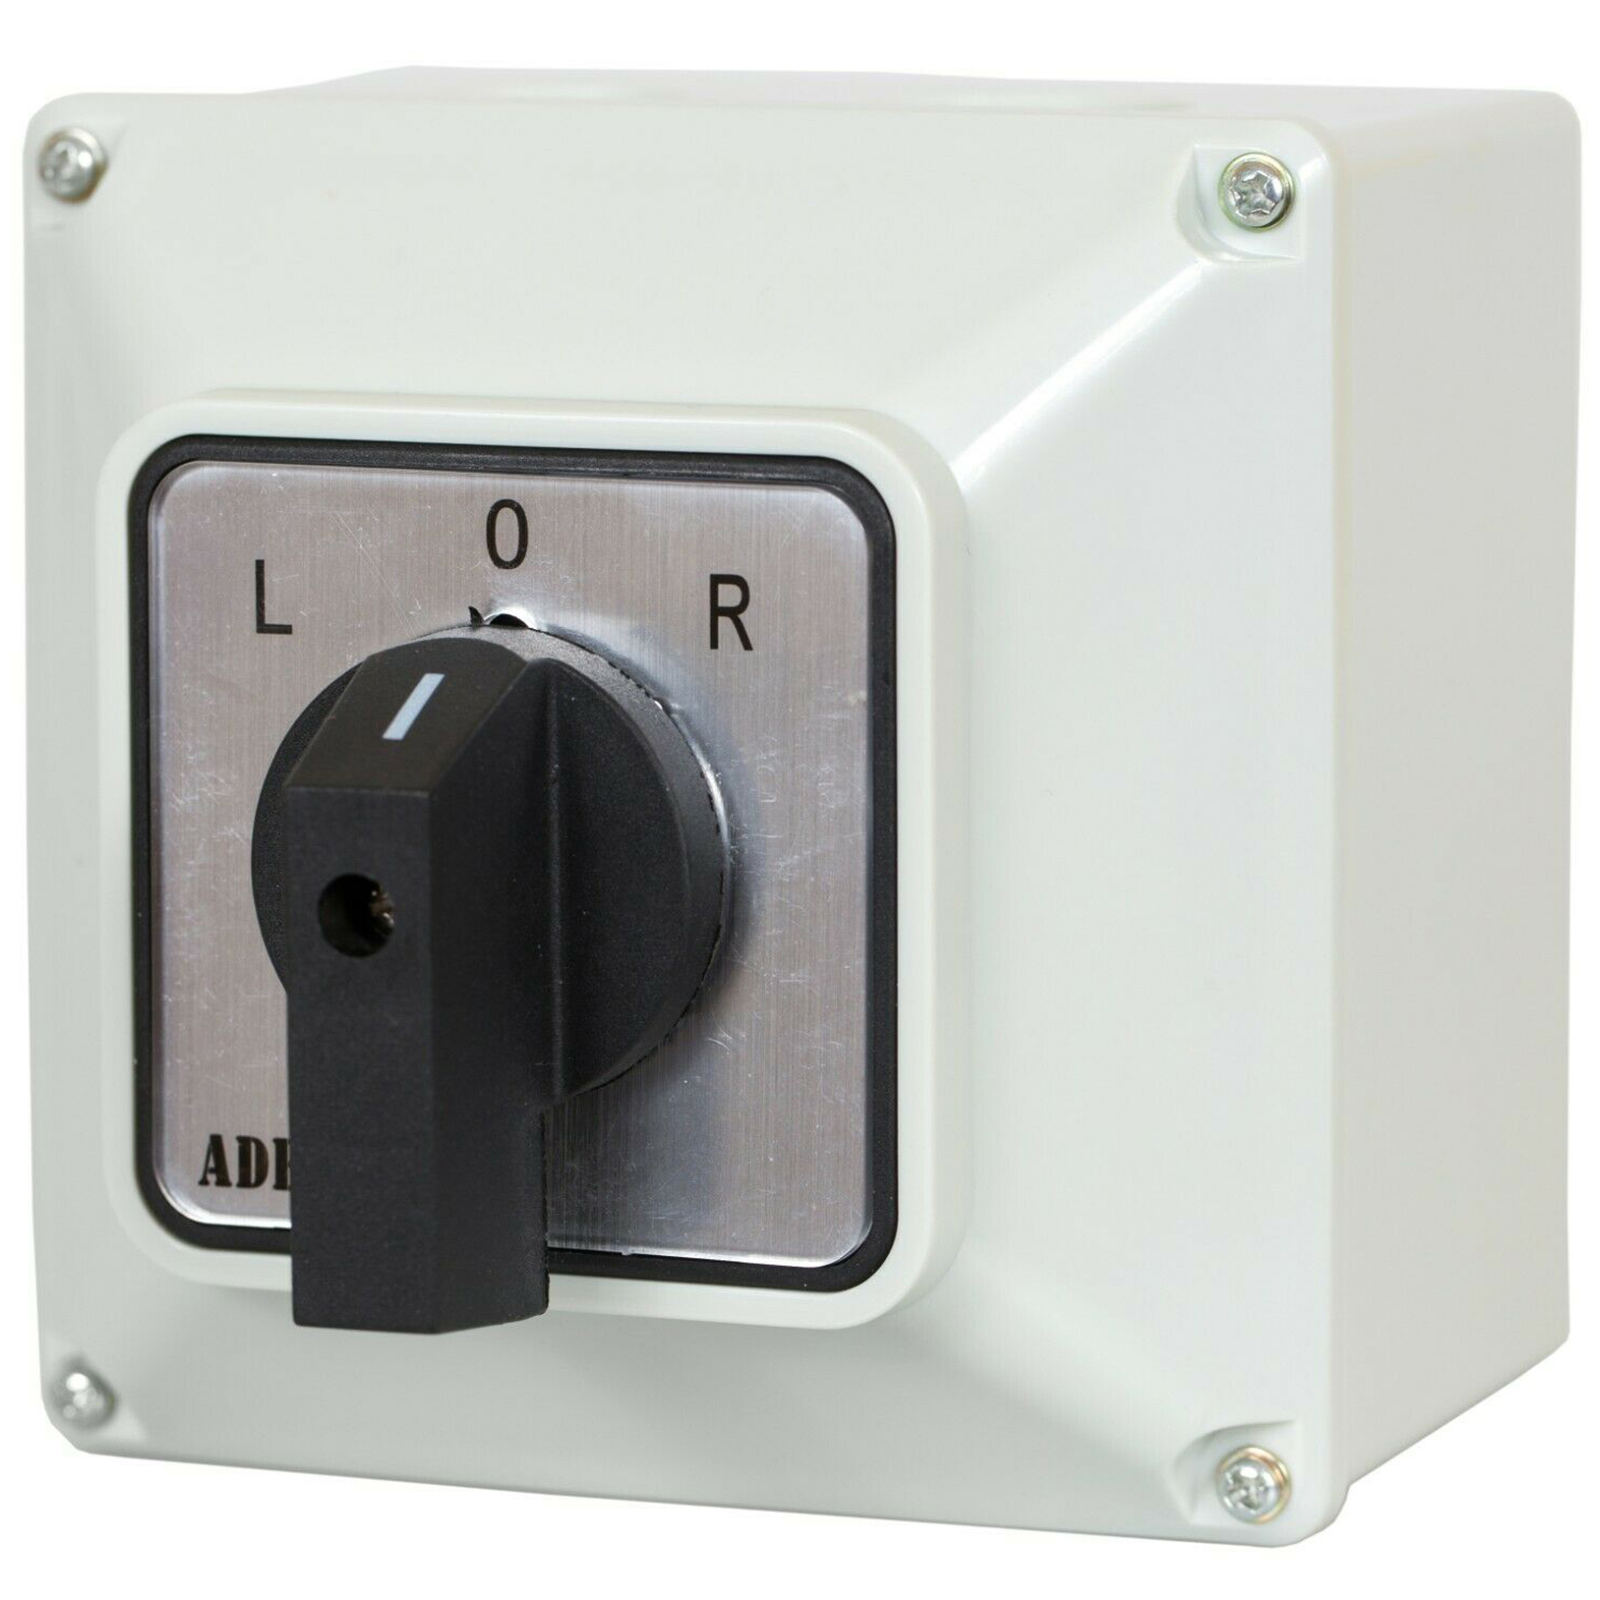 elektromagnetischer Schalter 230 V ohne L/R-Schaltung - RCCK21, Schalter, MASCHINENELEMENTE